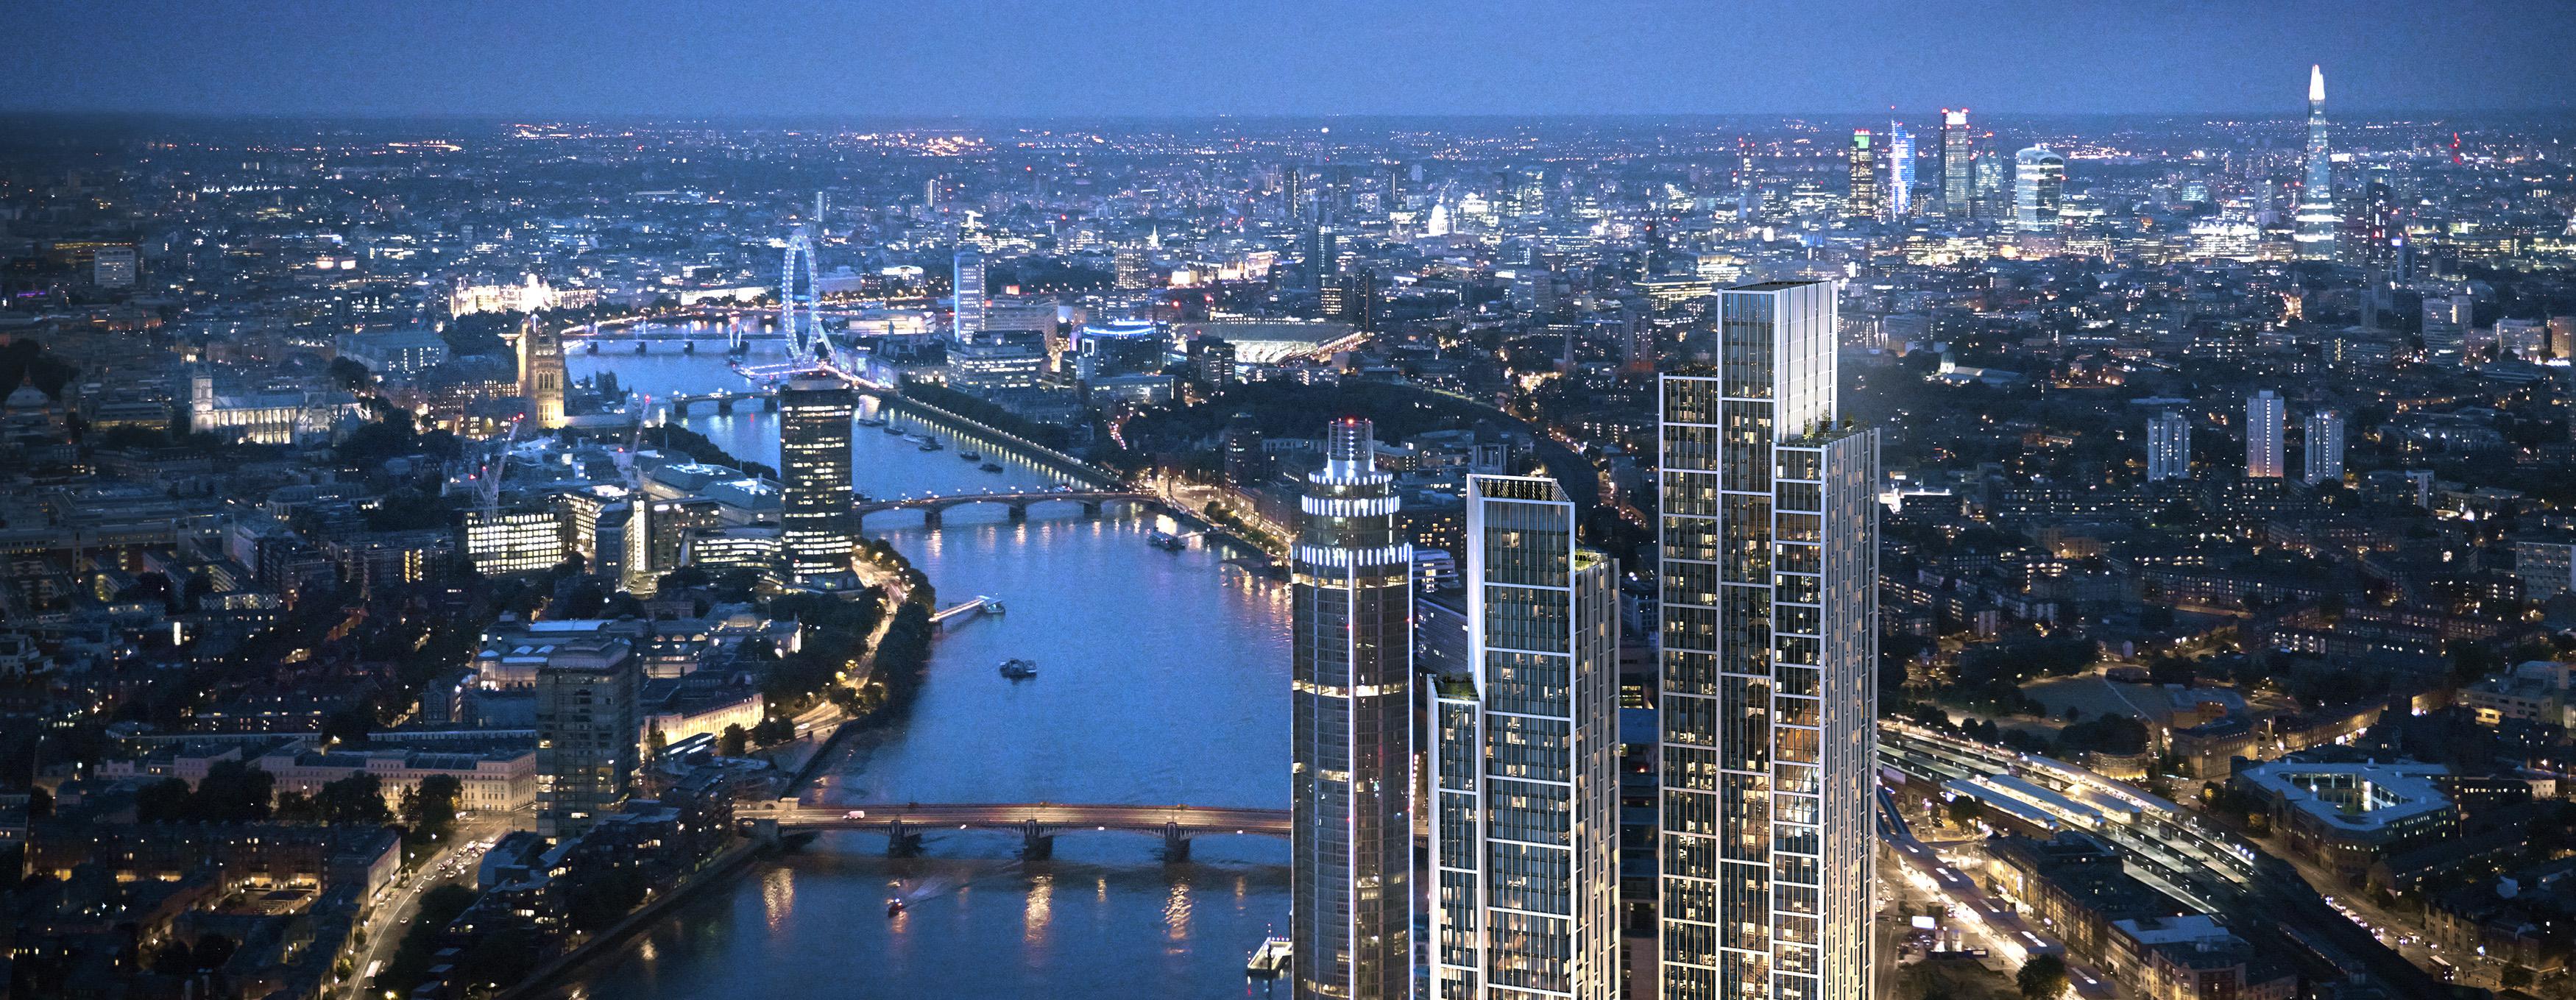 万达海外加速布局 首个项目伦敦ONE即将入市(组图)_新浪房产_新浪网